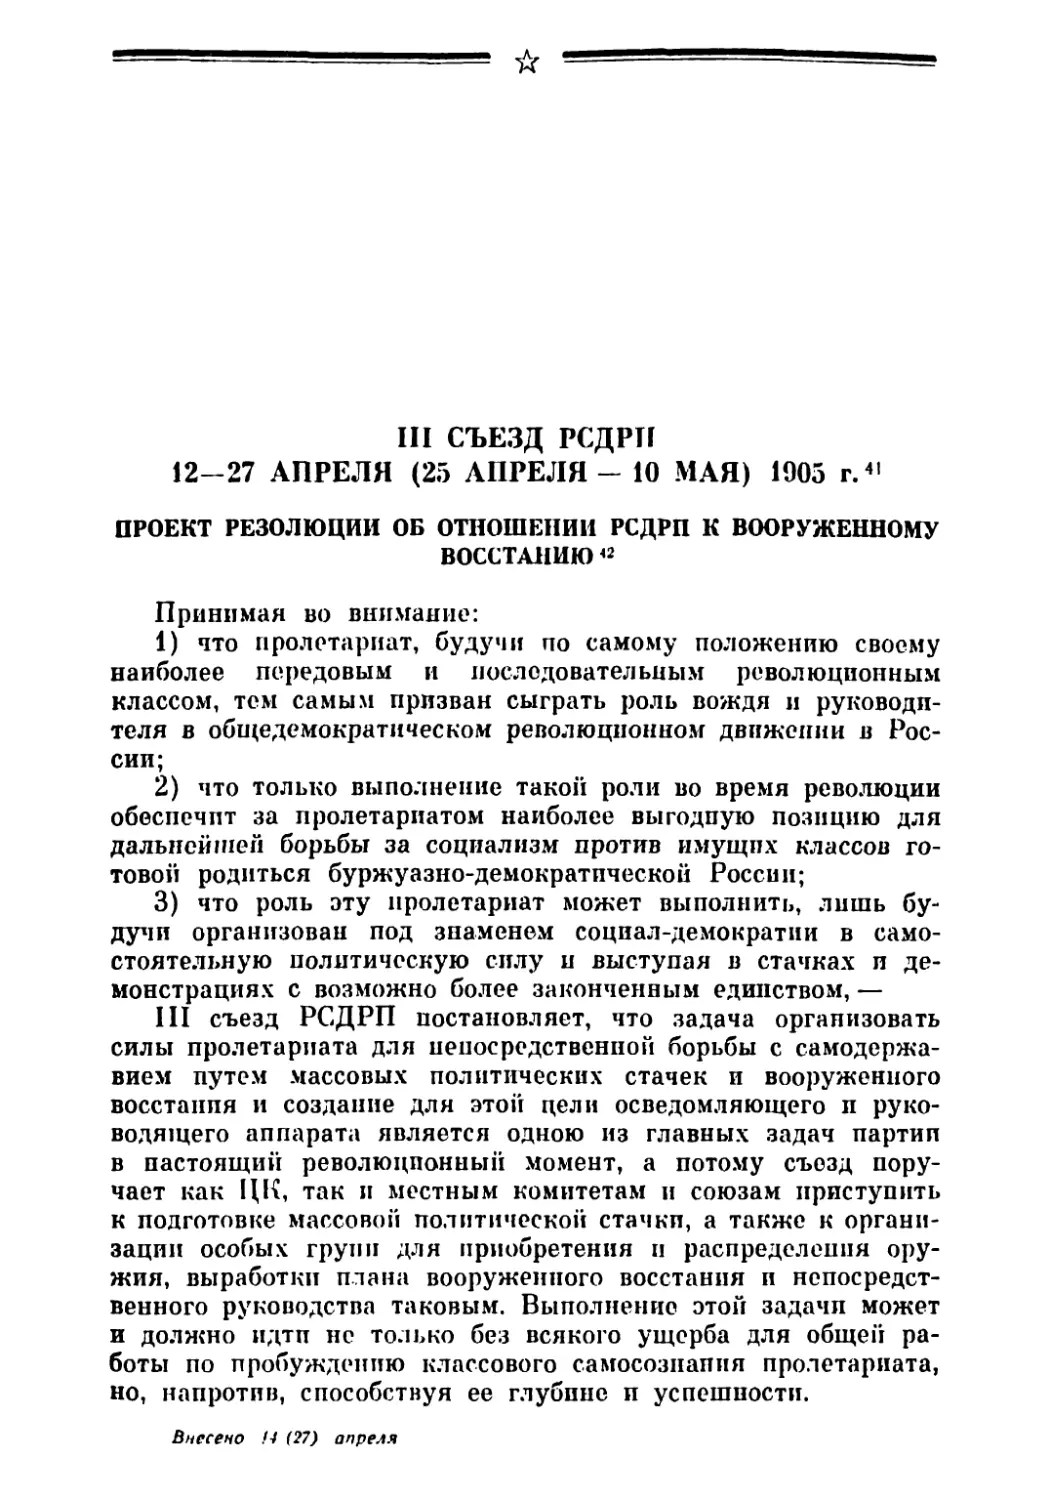 Проект резолюции об отношении РСДРП к вооруженному восстанию